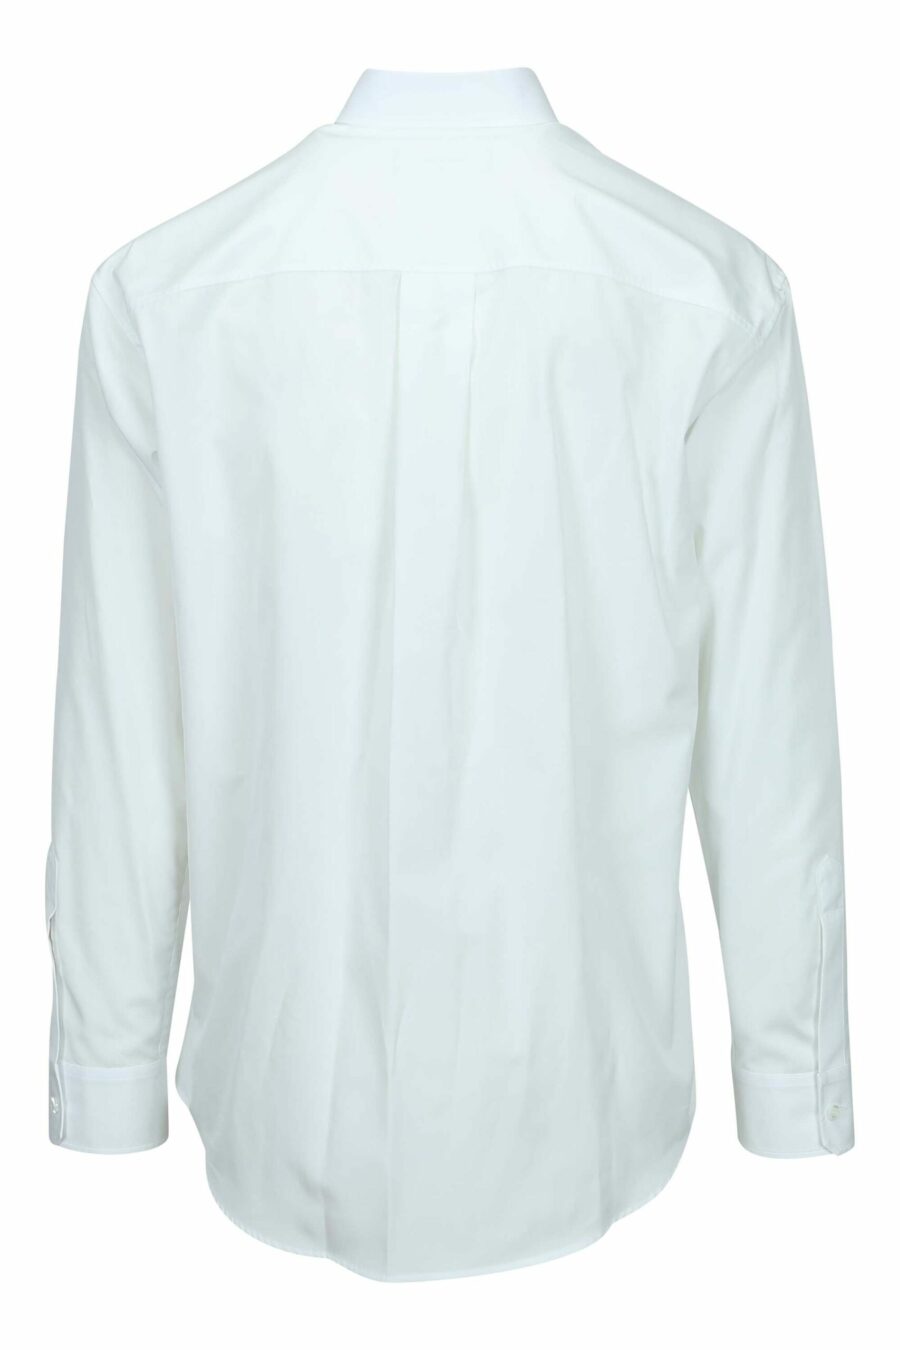 Camisa blanca con minilogo piña - 8054148528201 1 scaled